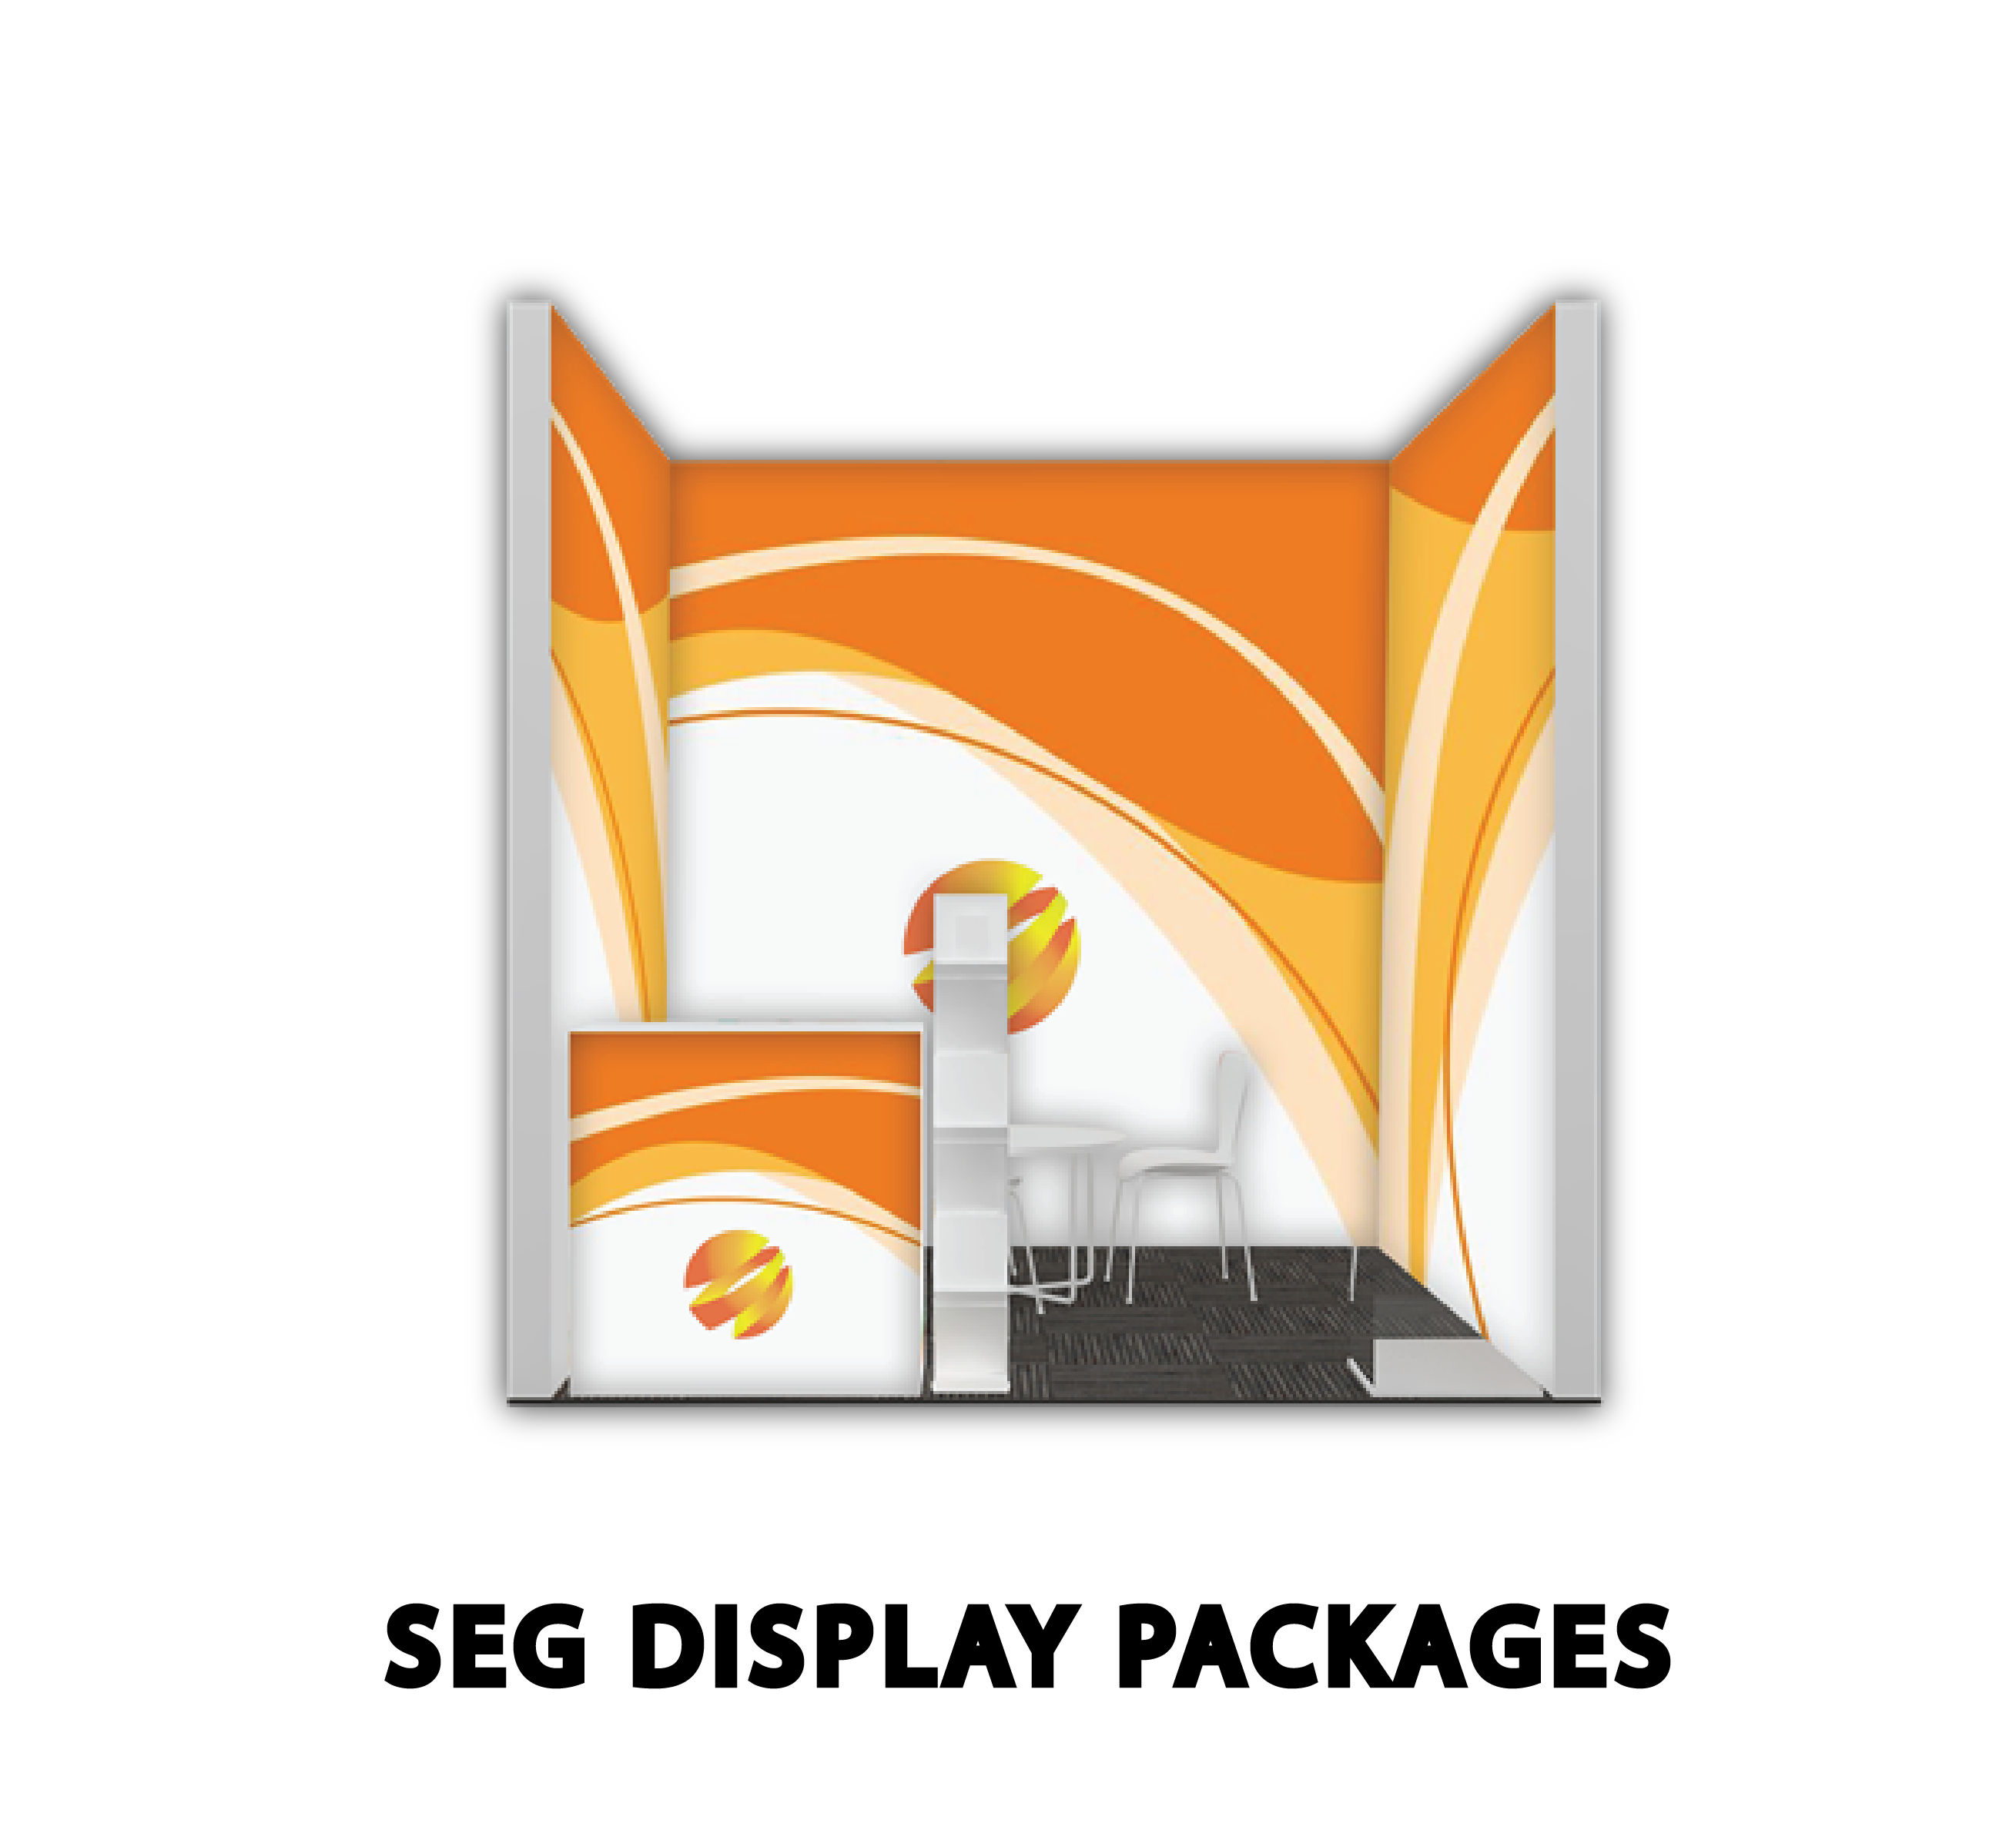 SEG Display Packages